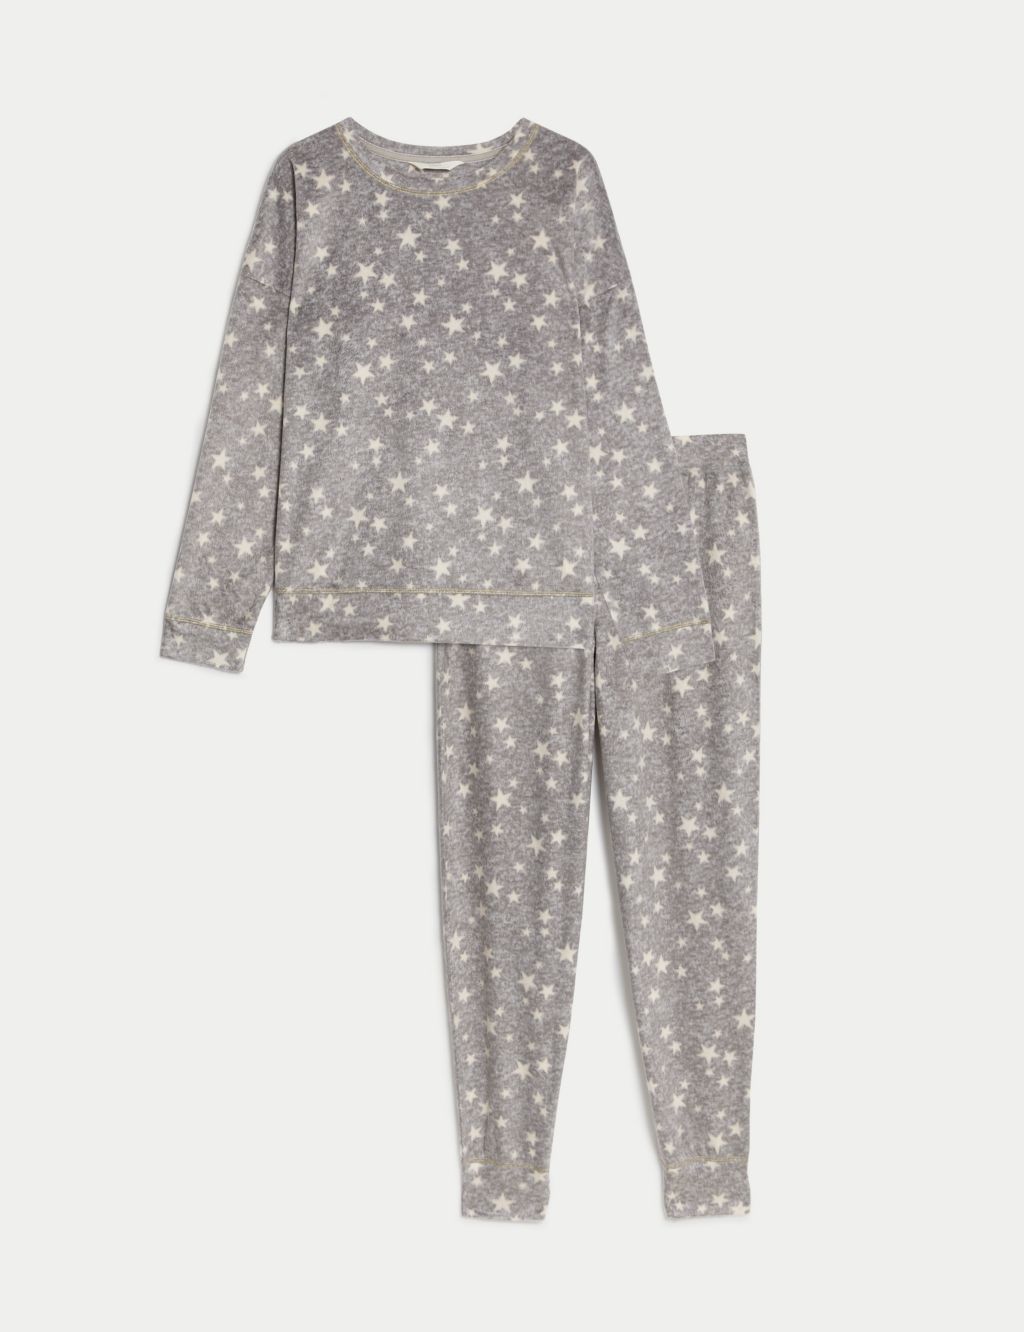 Fleece Star Print Pyjama Set image 2